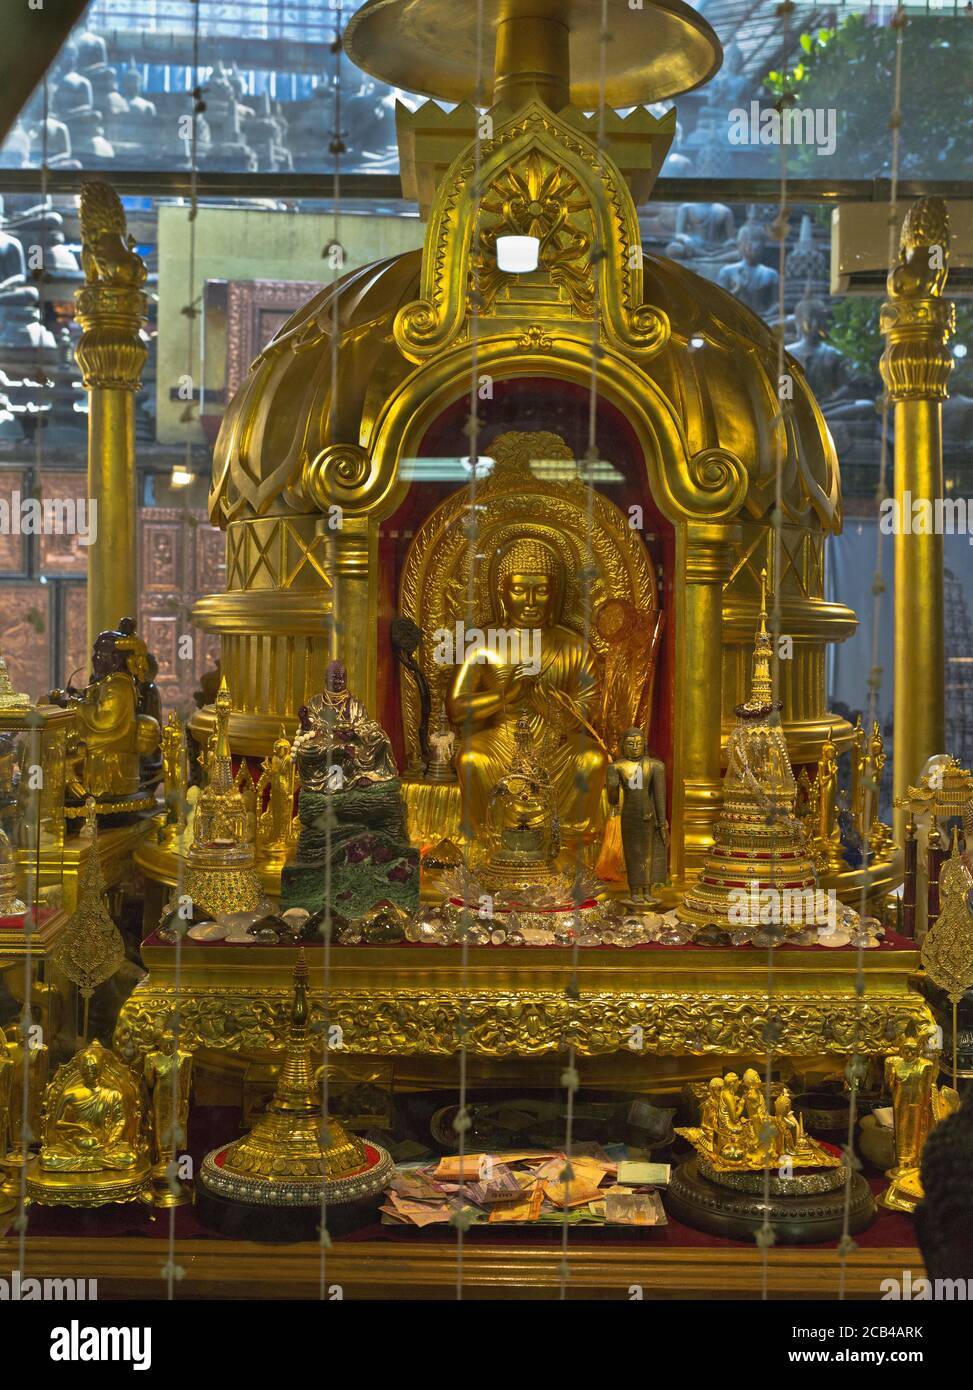 dh Gangaramaya tempio buddista COLOMBO CITTÀ SRI LANKA Templi museo All'interno sacre reliquie Buddha santuario statua d'oro Foto Stock